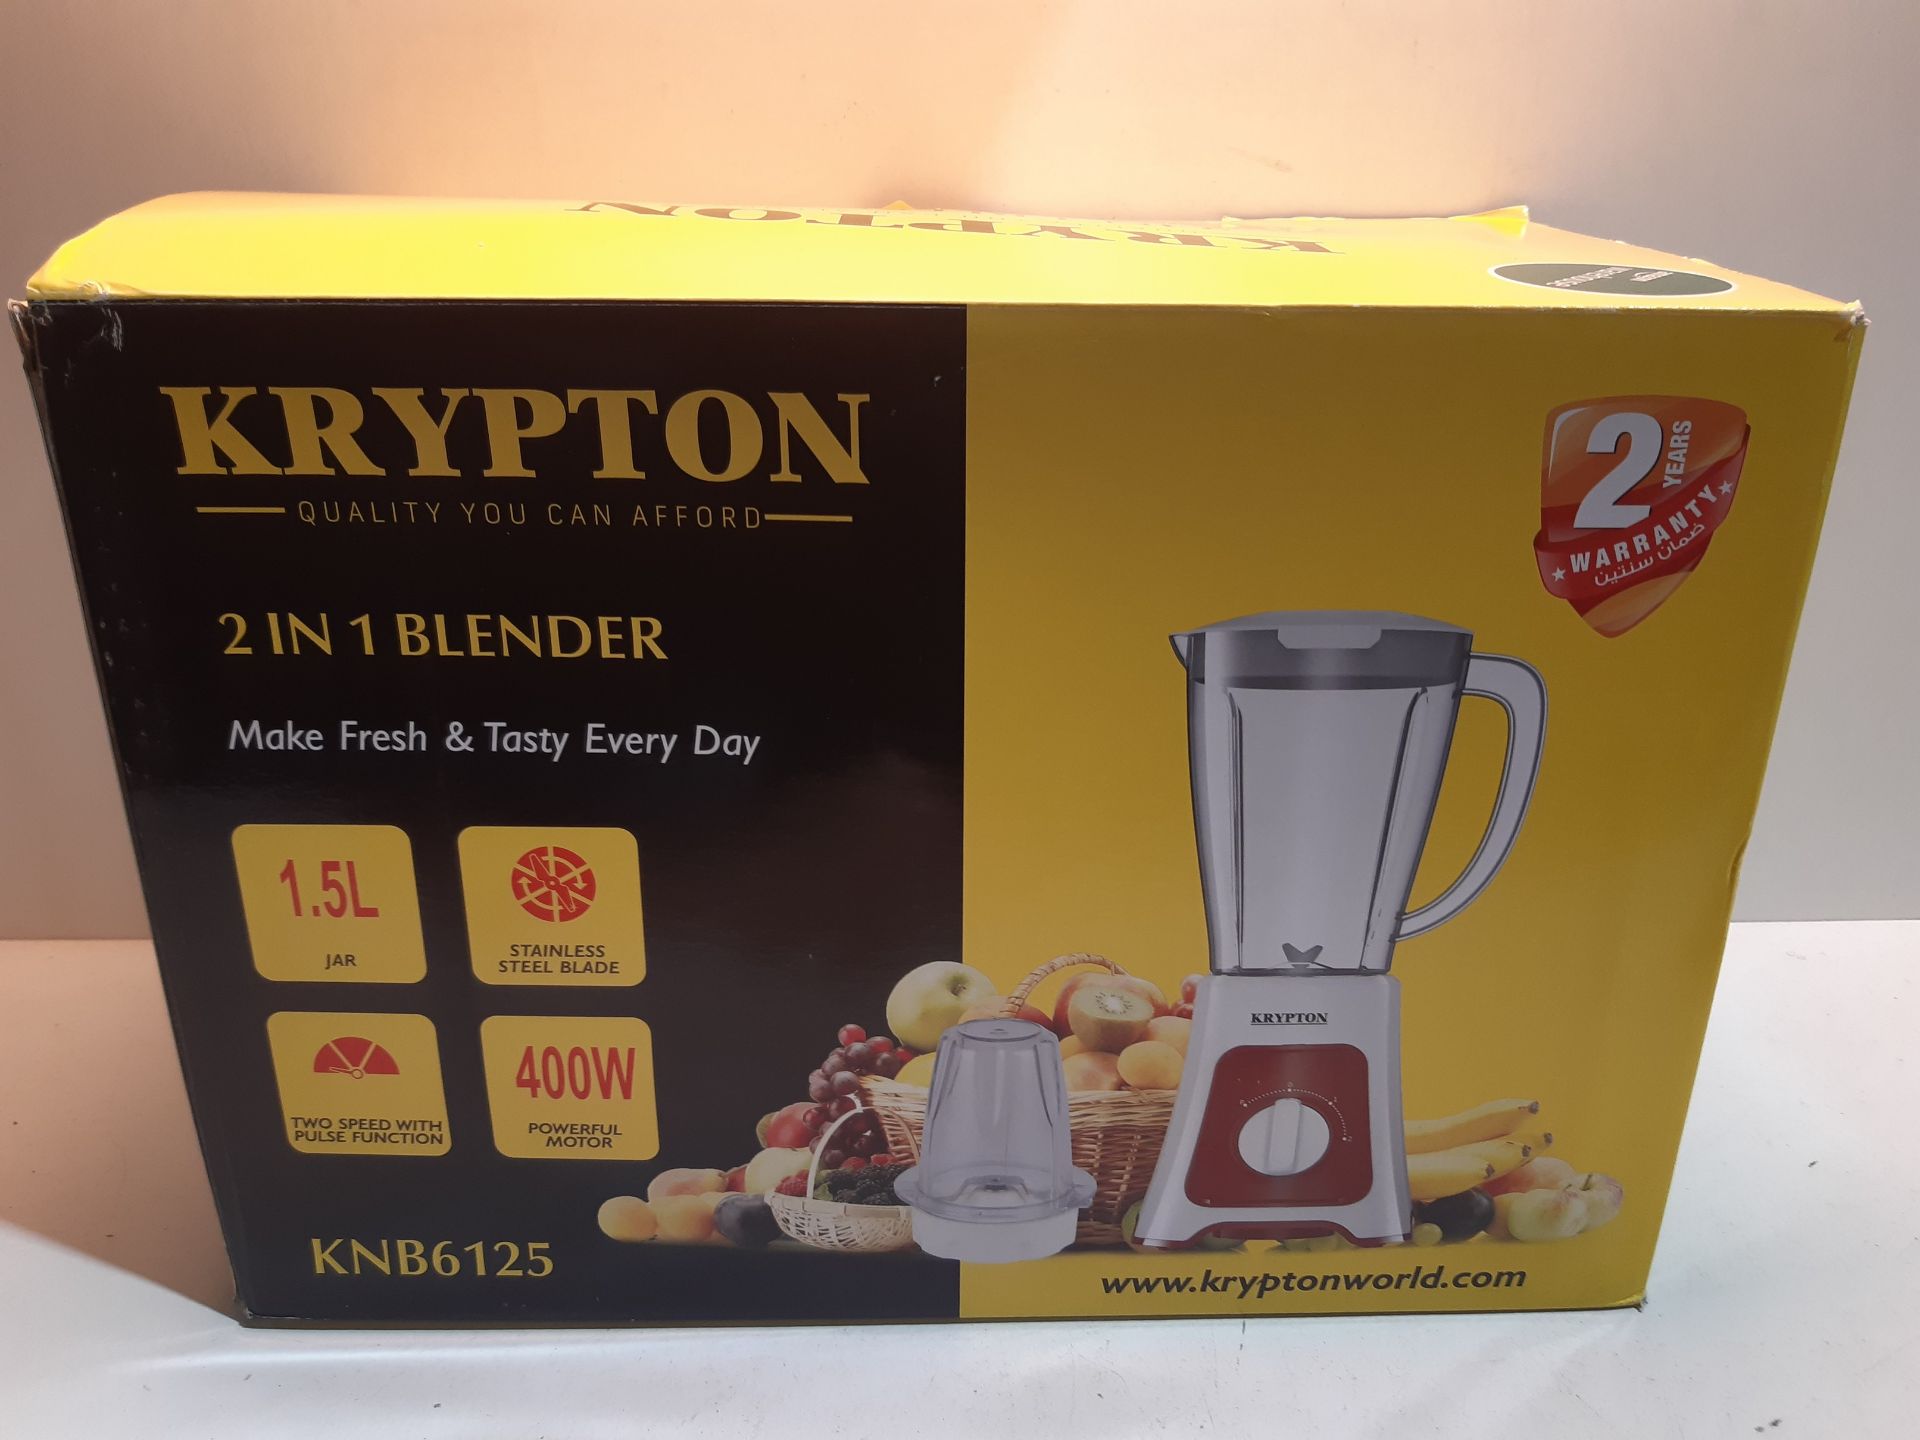 RRP £22.56 Krypton 400W 2 in 1 Food Jug Blender with 1.5L Jar - Stainless Steel Blades